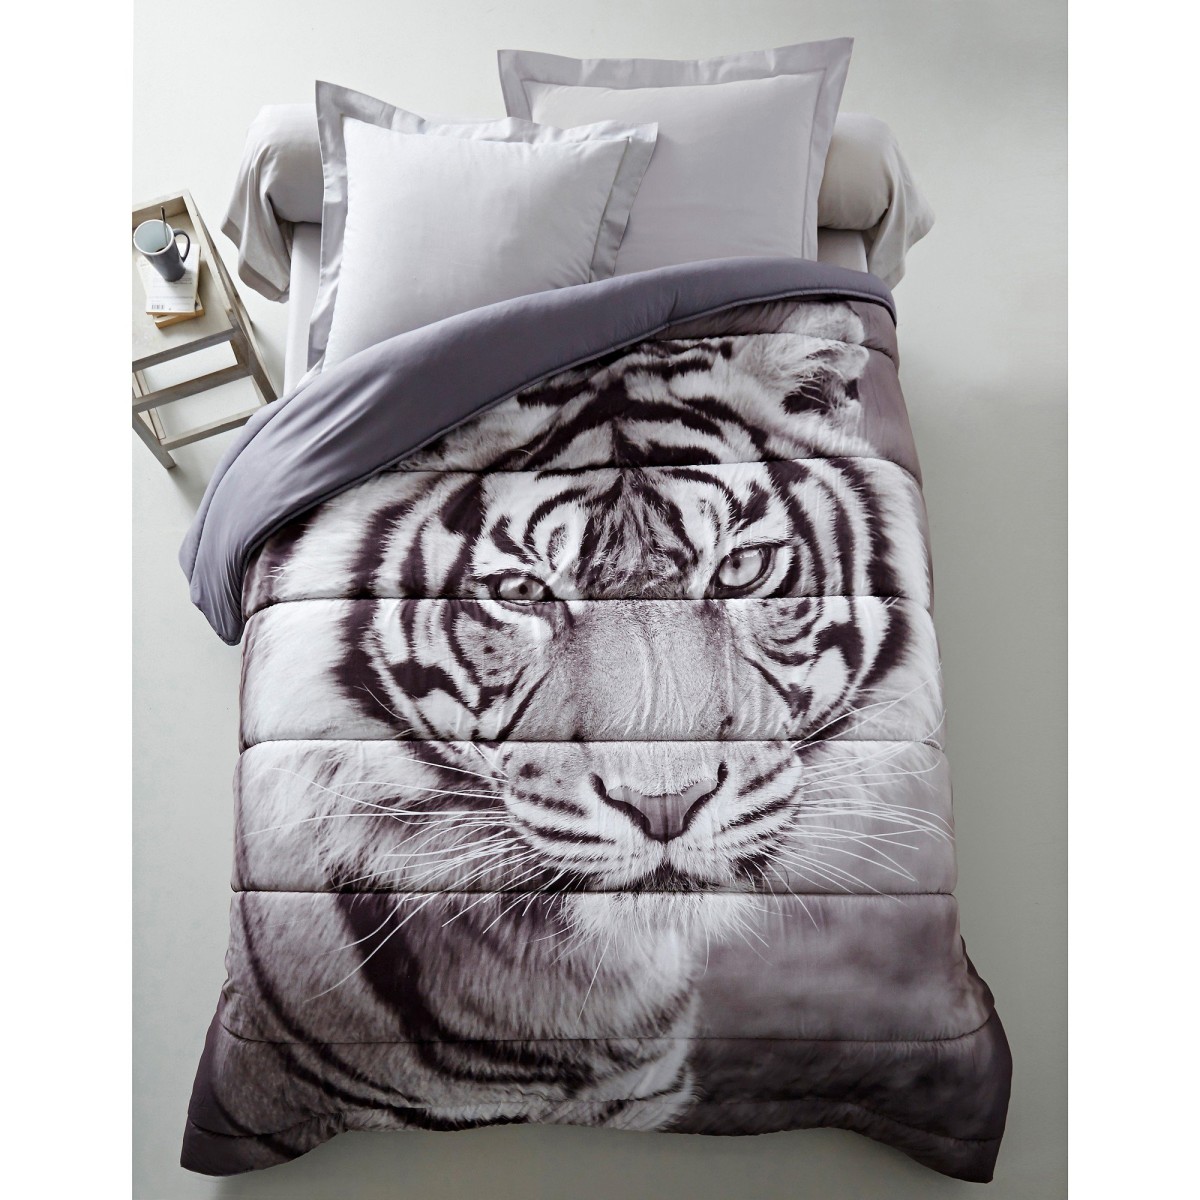 Prikrývka s fotopotlačou tigra, mikrovlákno 200g m2 biela sivá 200x200cm